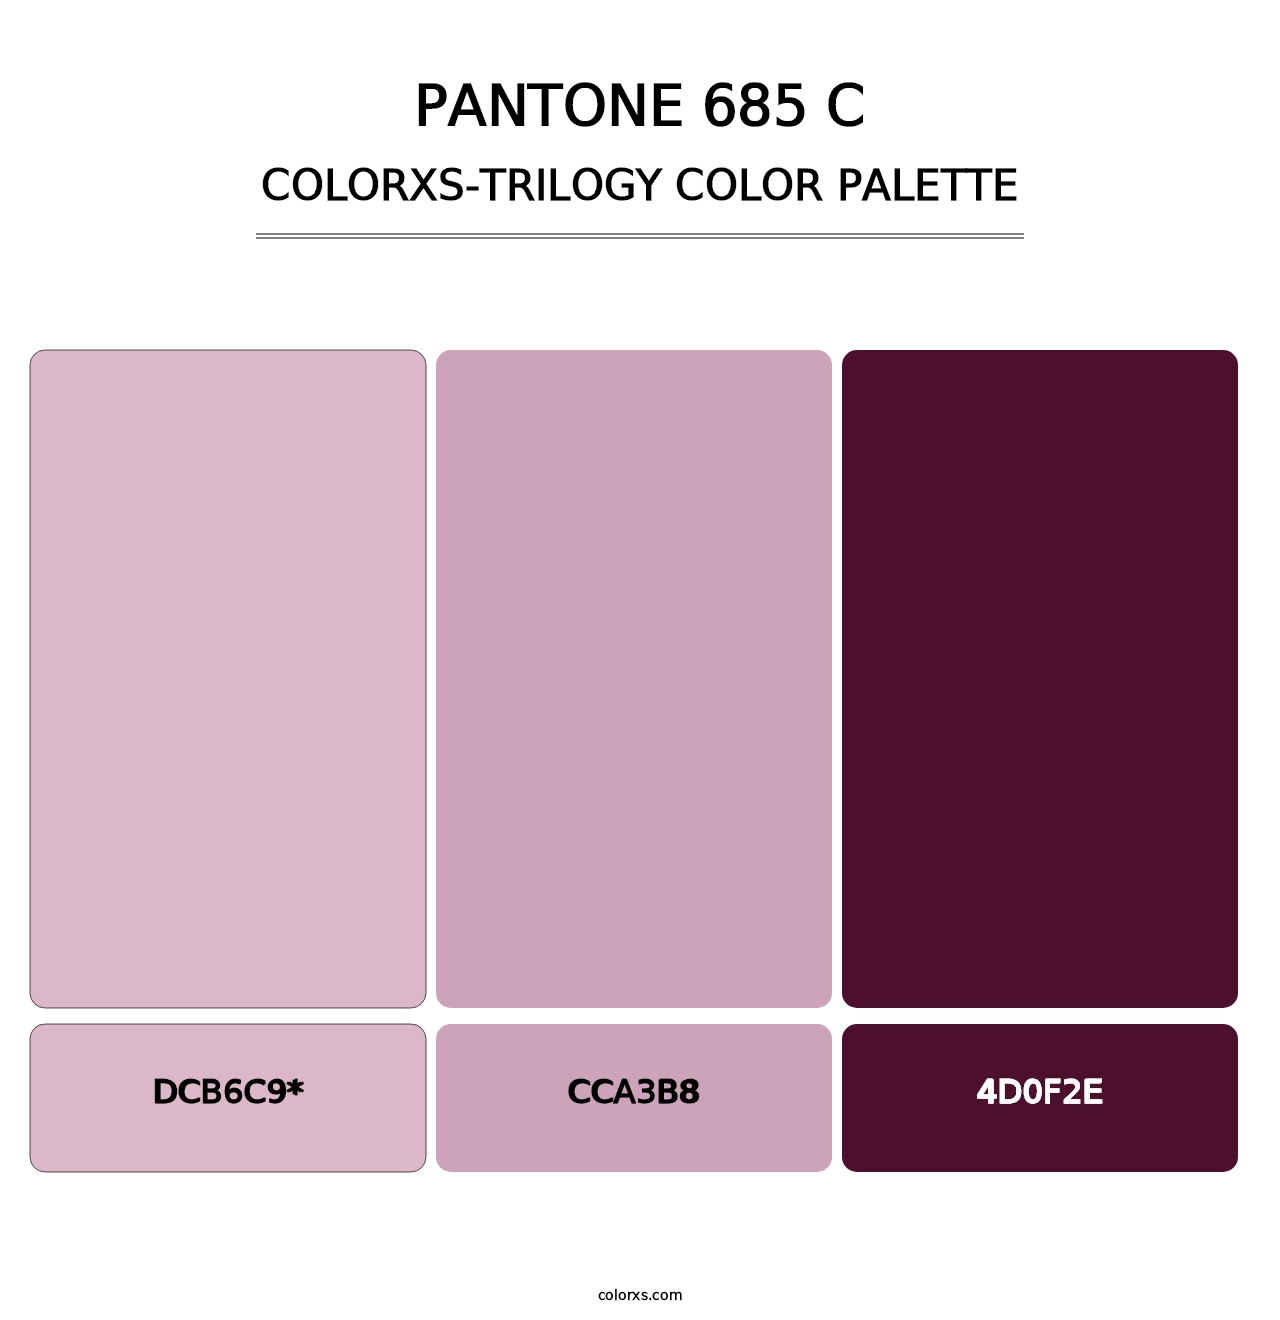 PANTONE 685 C - Colorxs Trilogy Palette